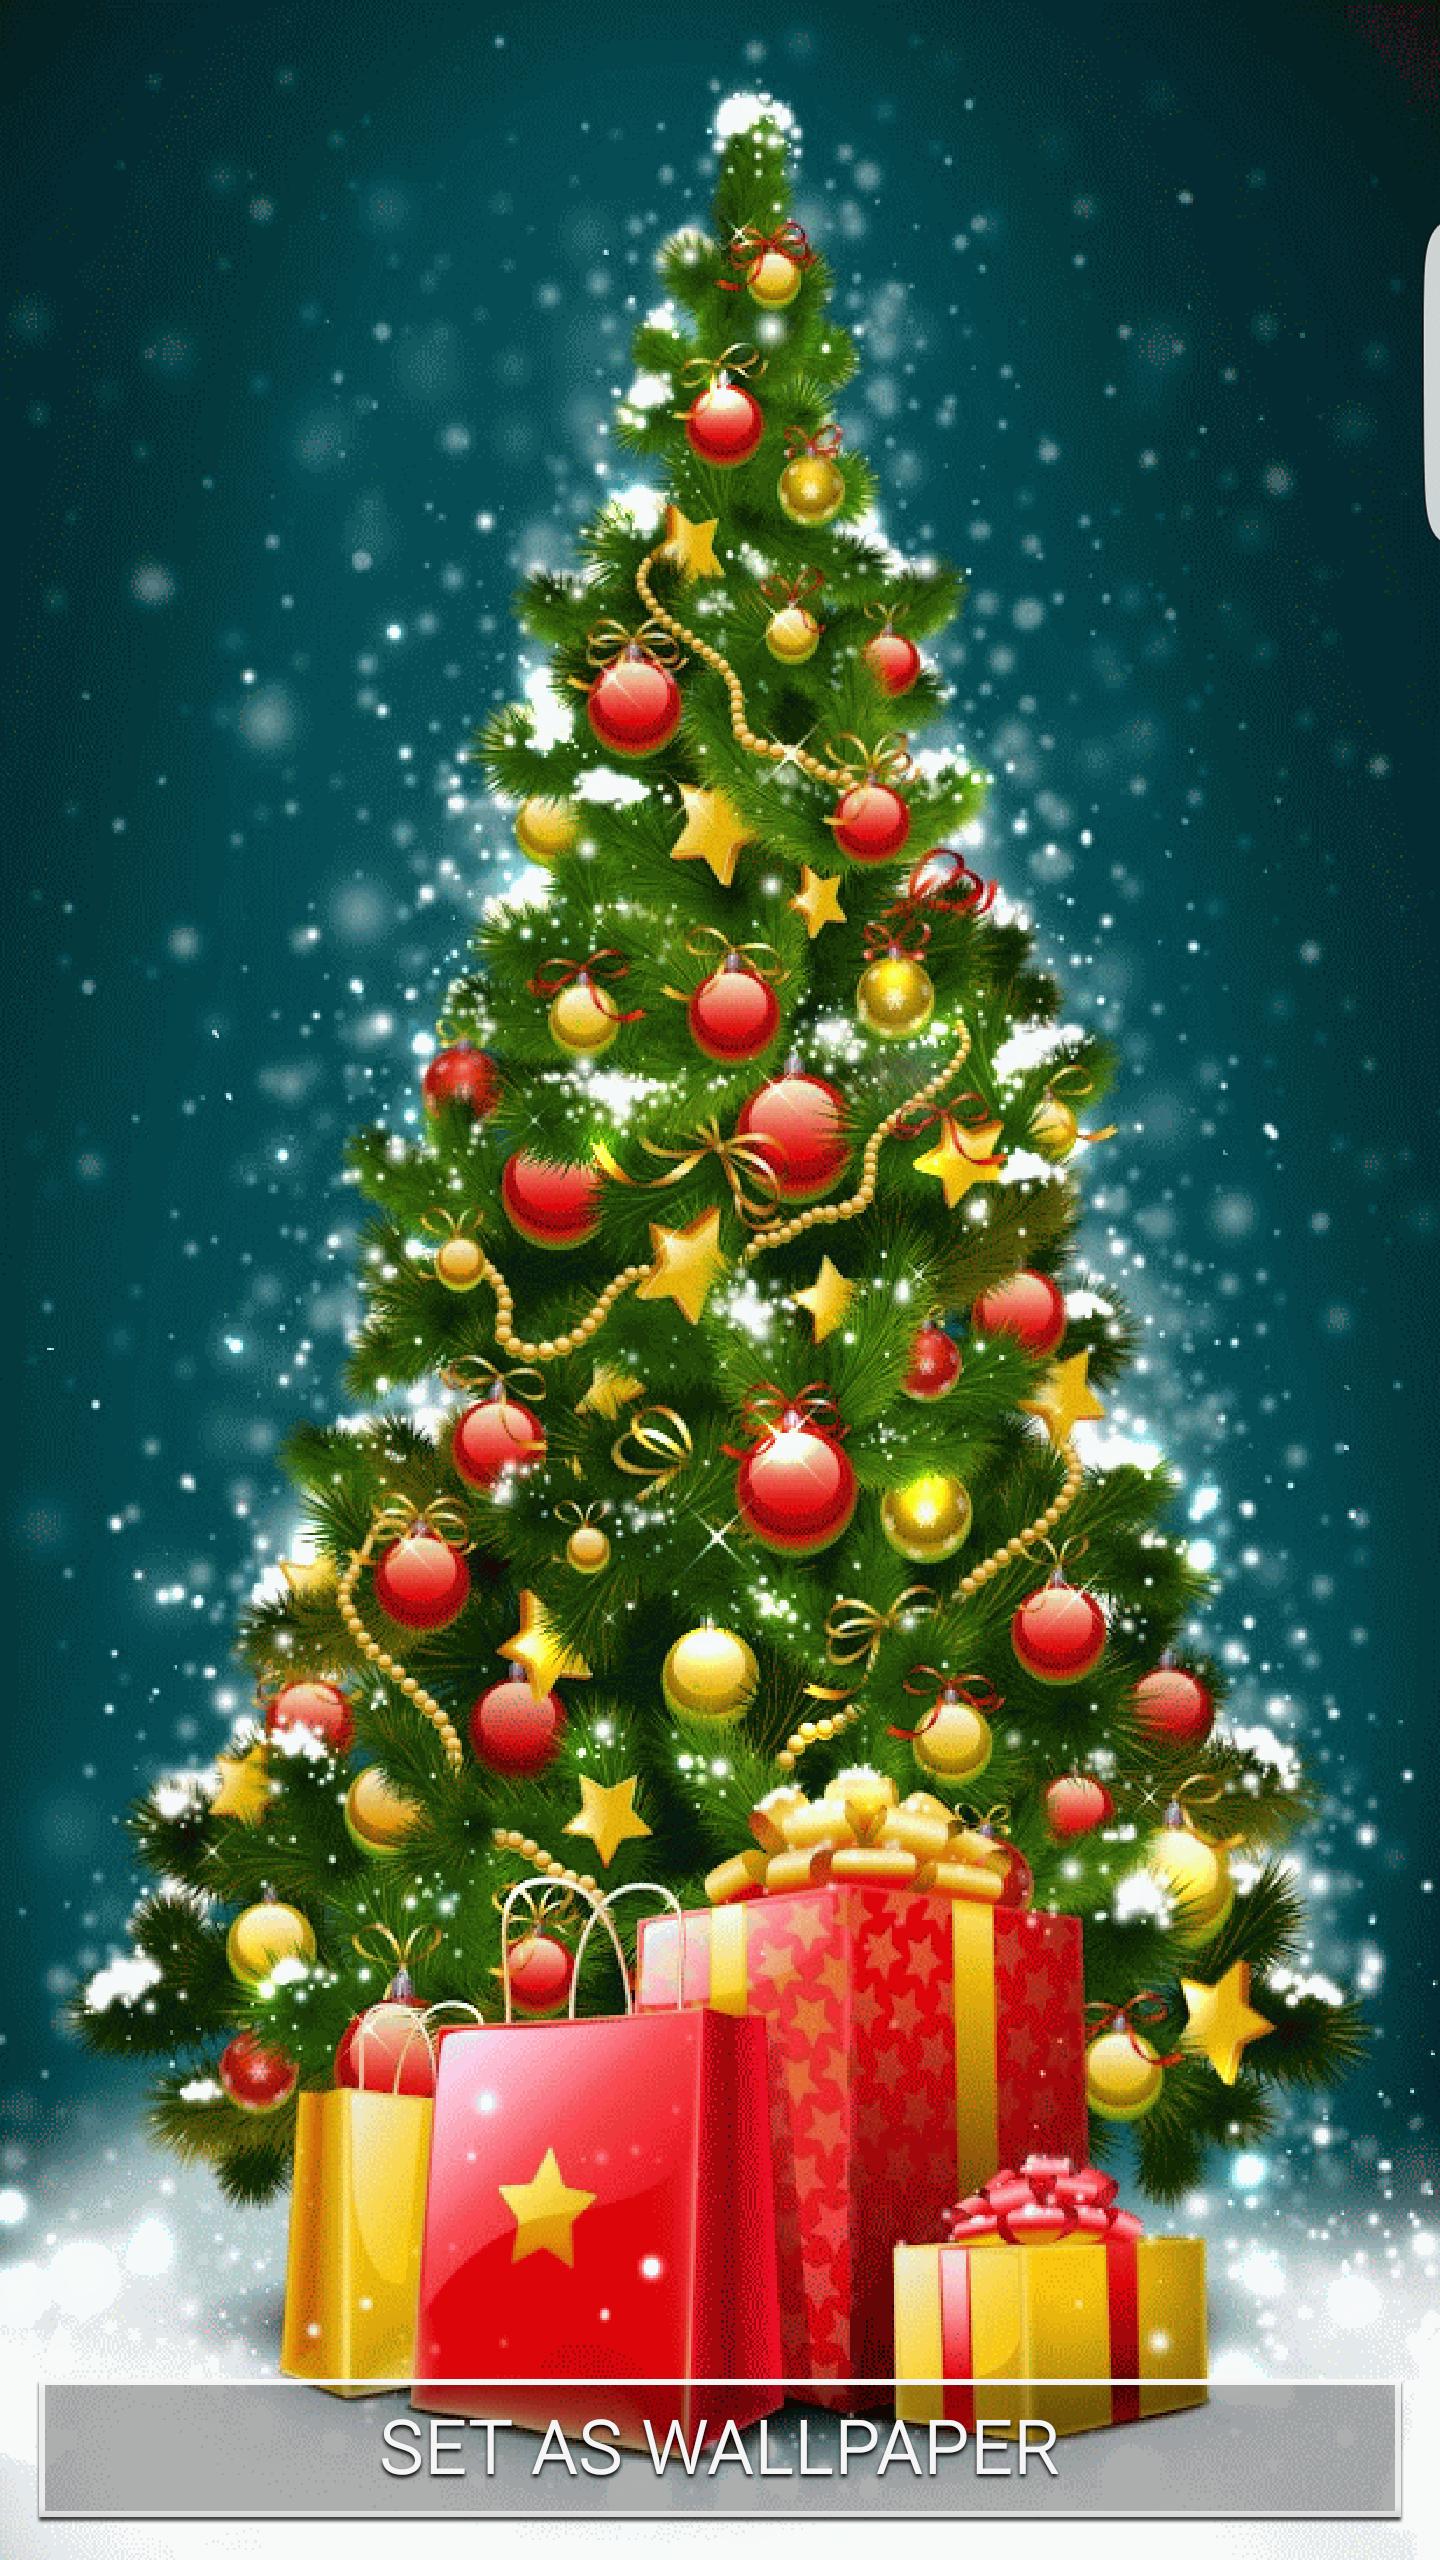 شجرة عيد الميلاد خلفيات متحركة For Android Apk Download